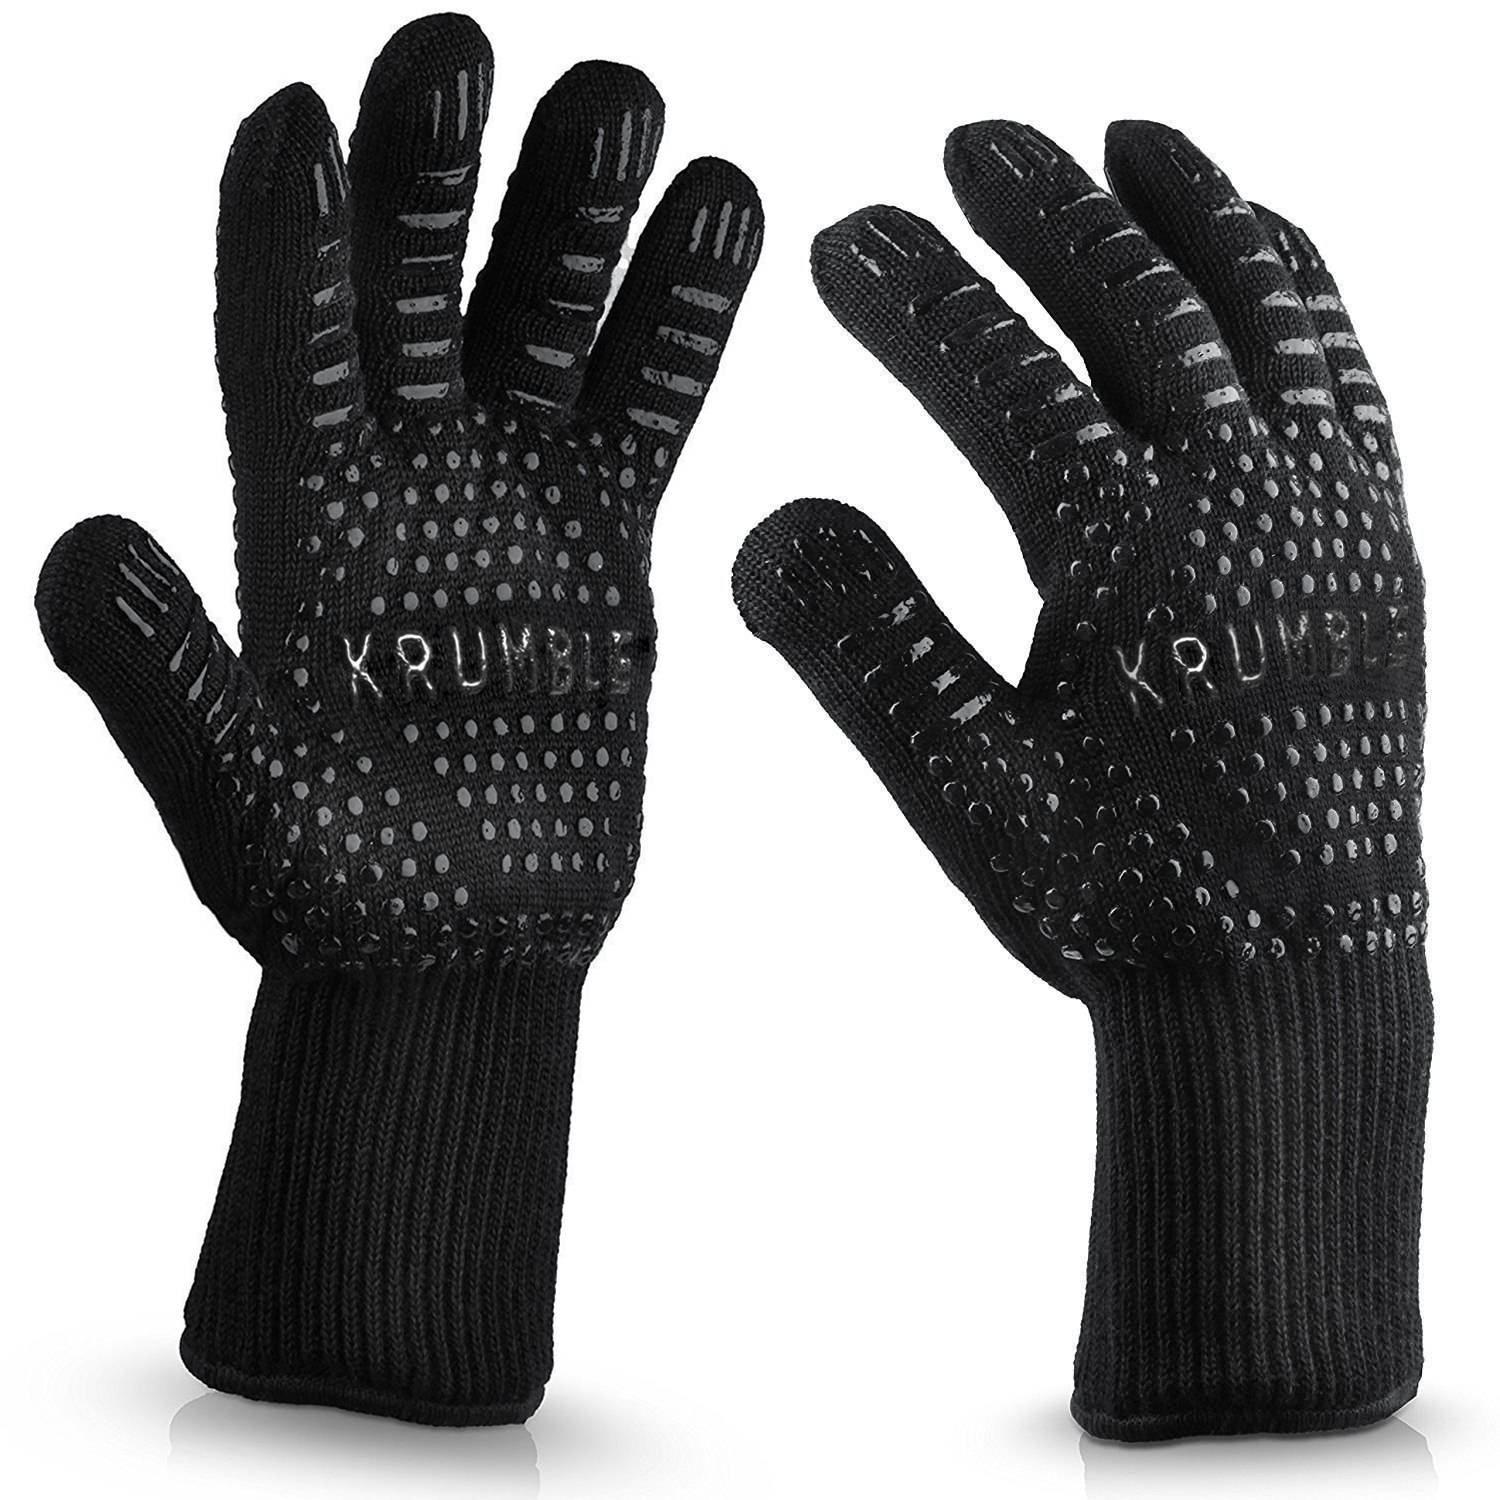 Krumble Hittebestendige Oven Handschoen Zwart Set Van 2